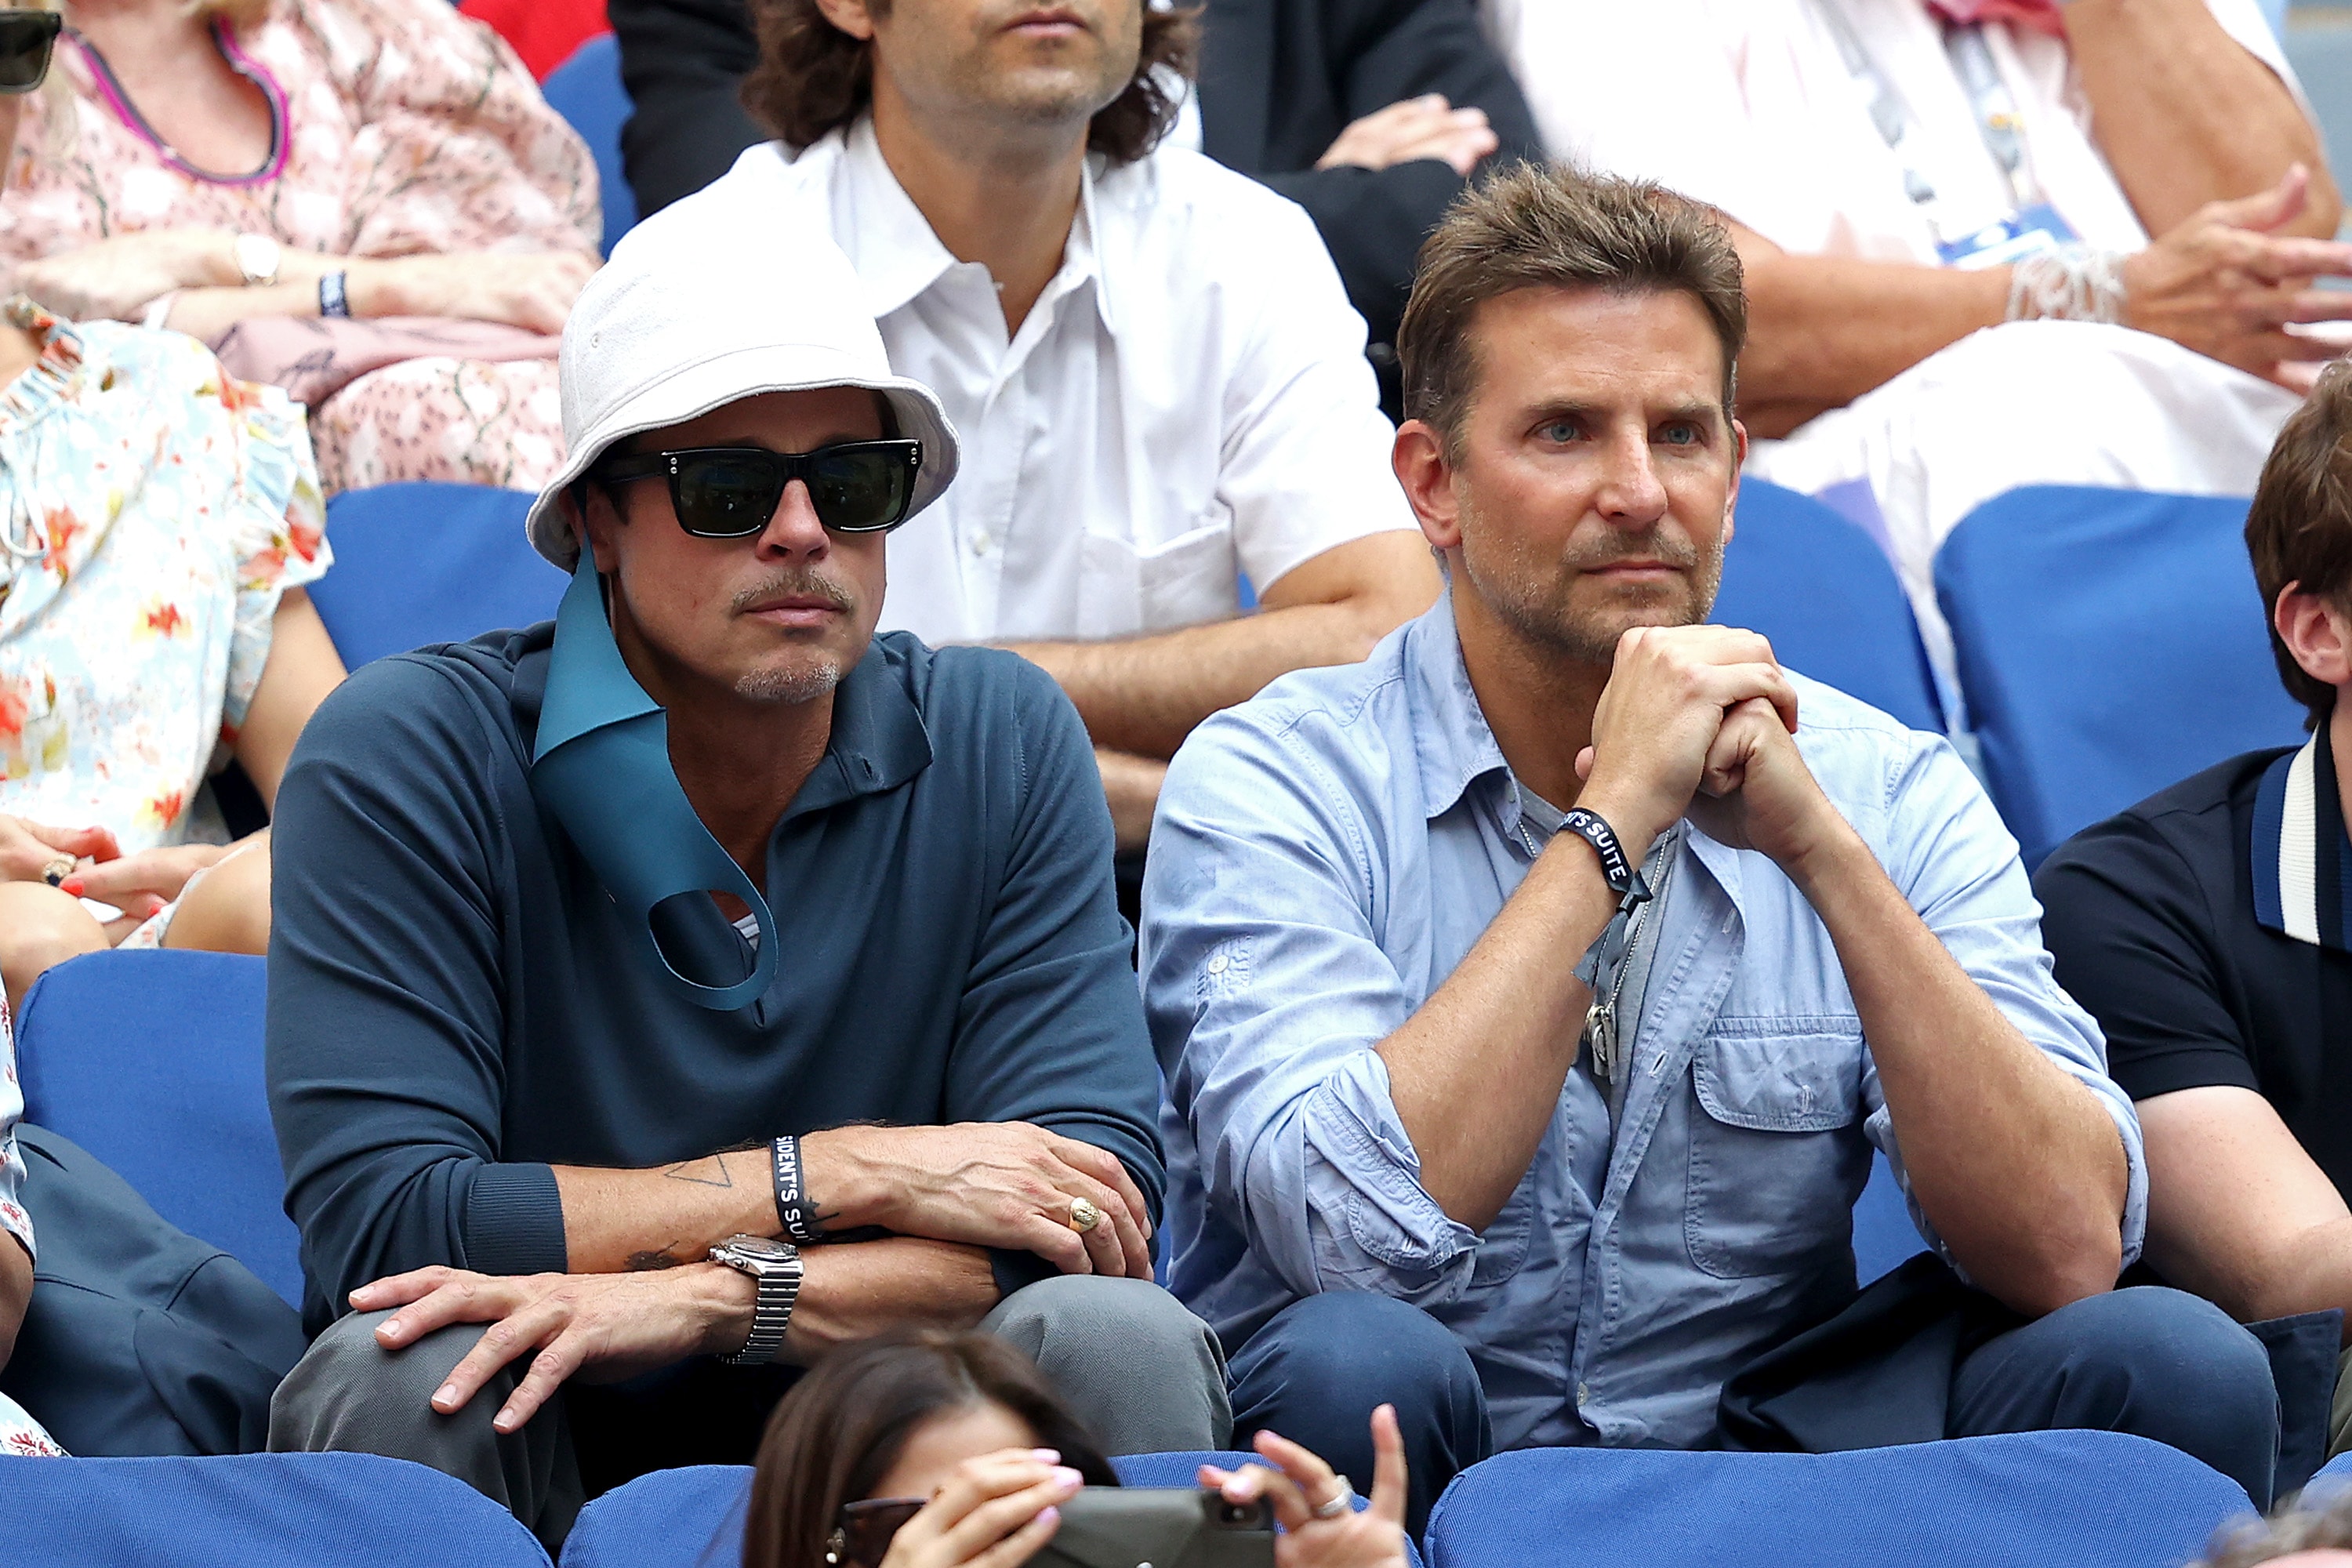 Brad Pitt, Bradley Cooper and more celebrities fill Arthur Ashe Stadium